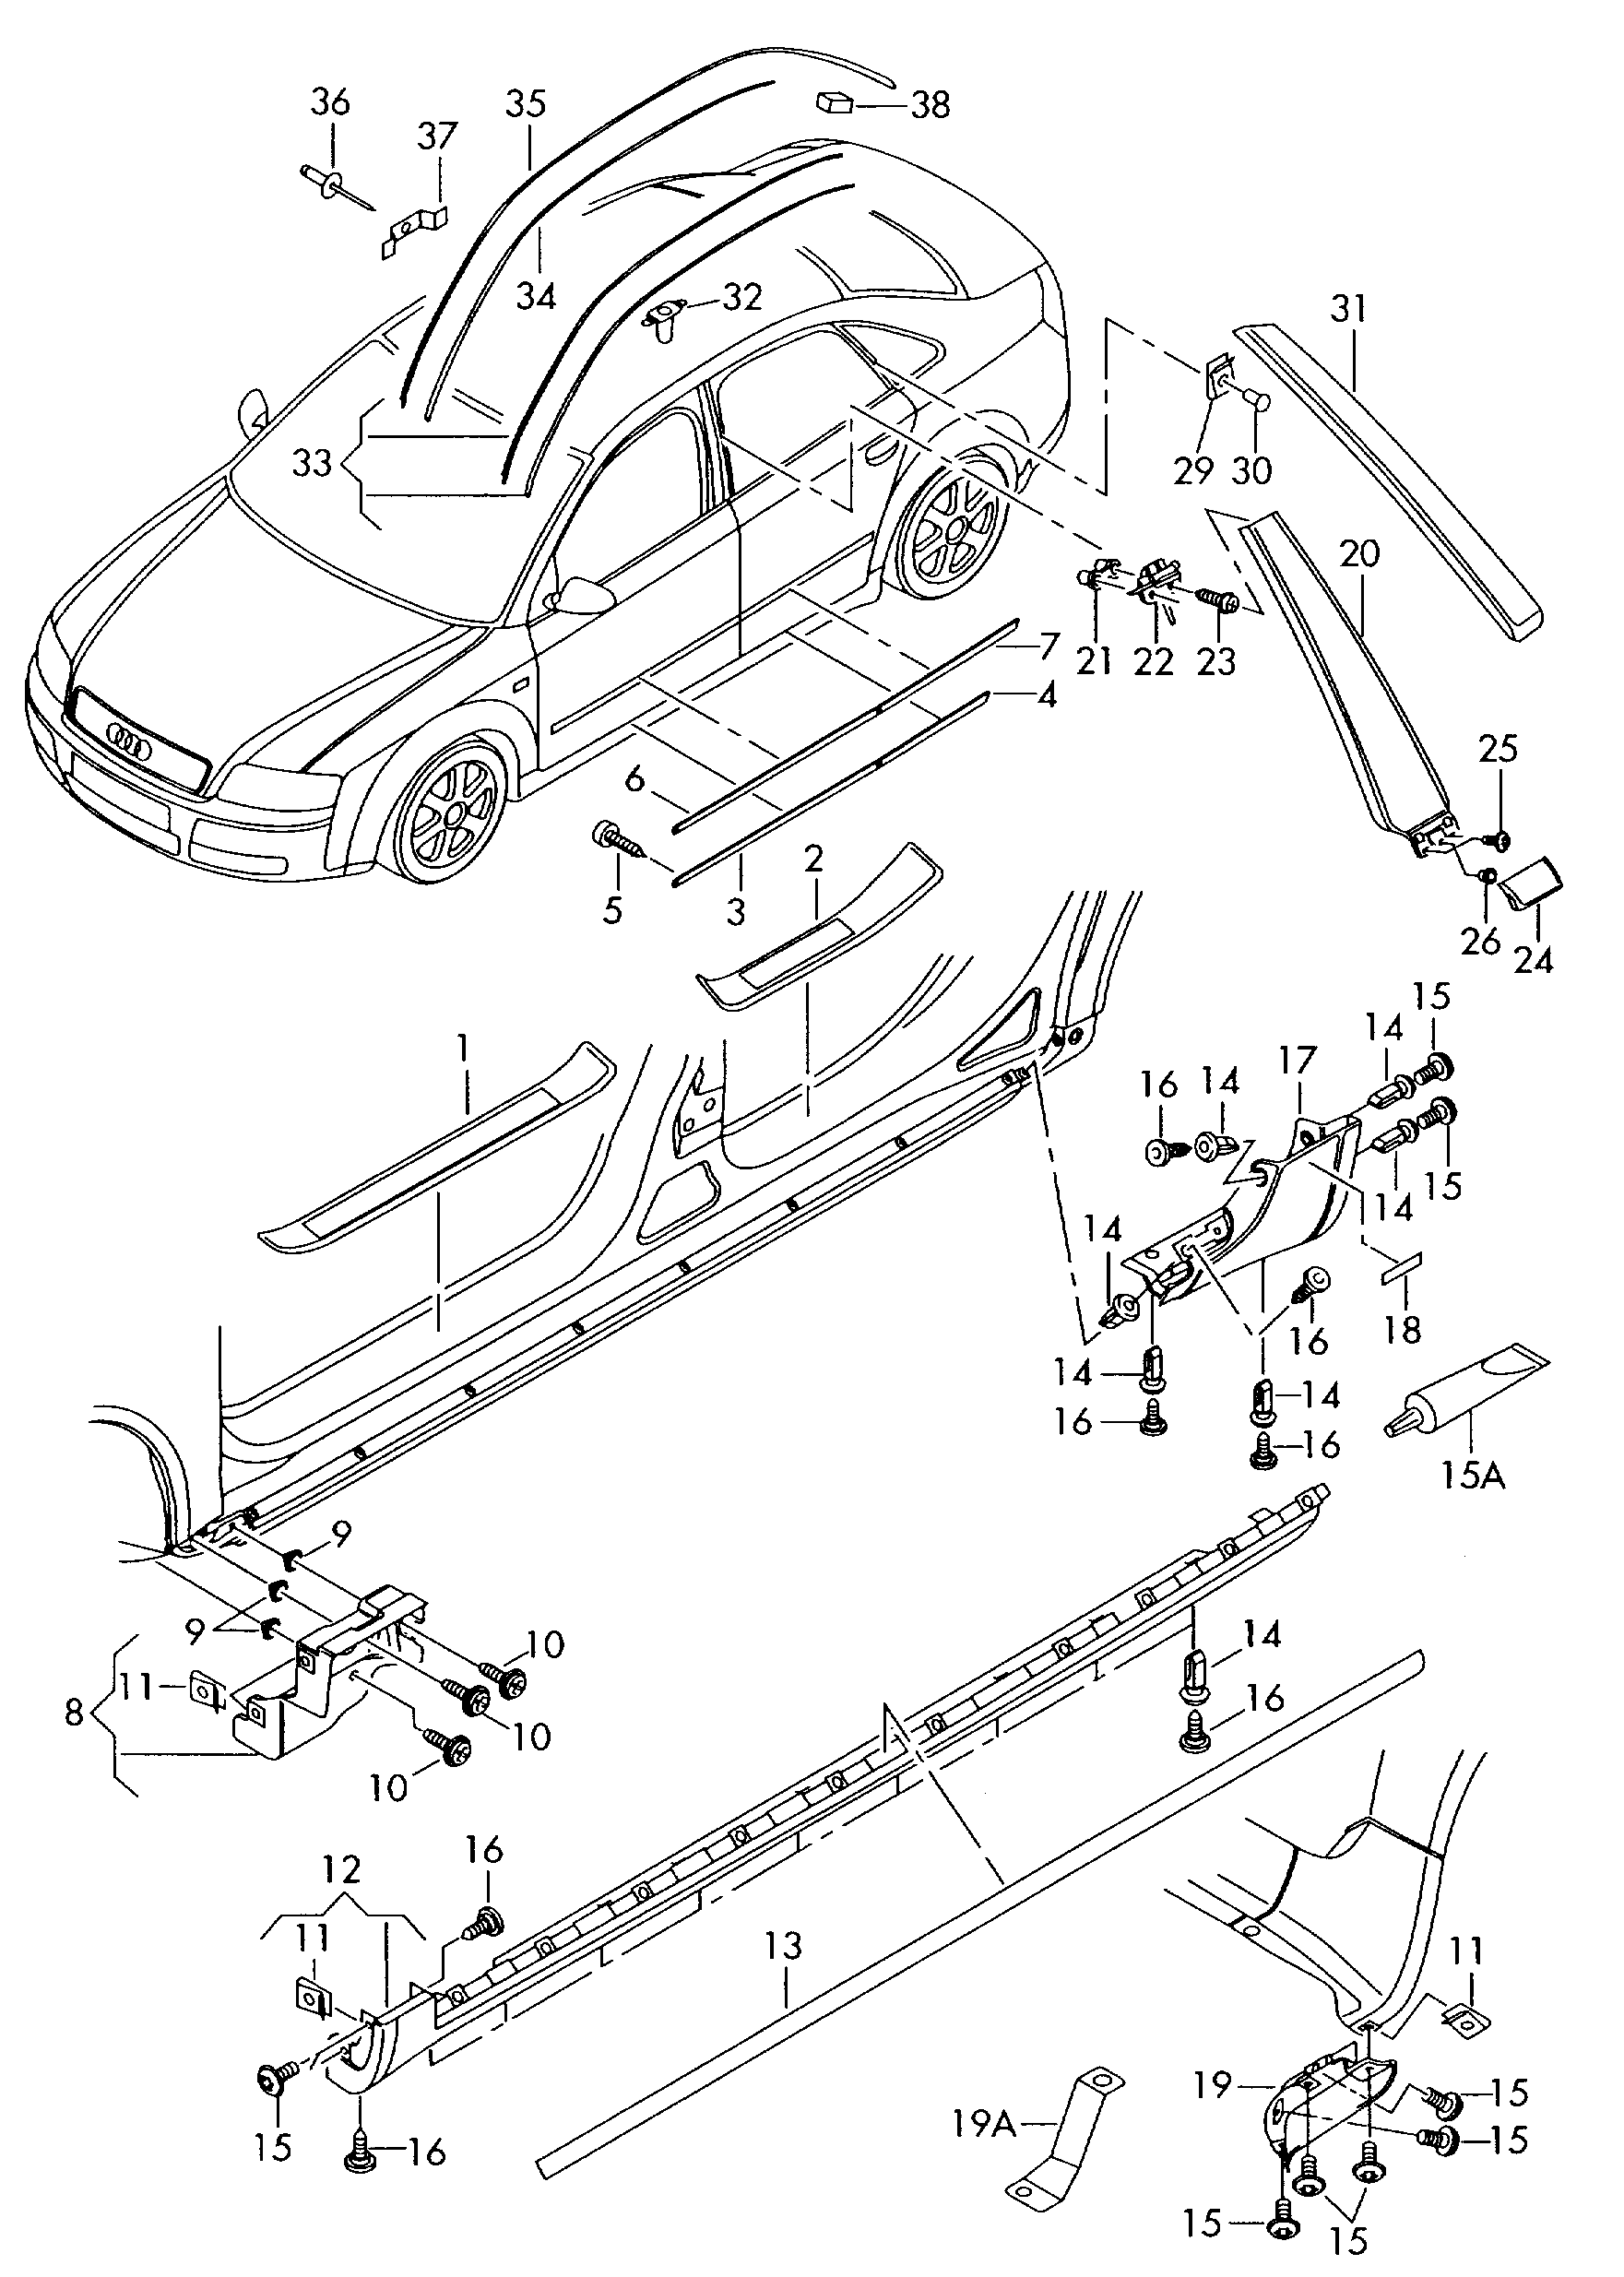 modanature e coperture
per parafanghi, porte
e f... - Audi A4/Avant(A4)  